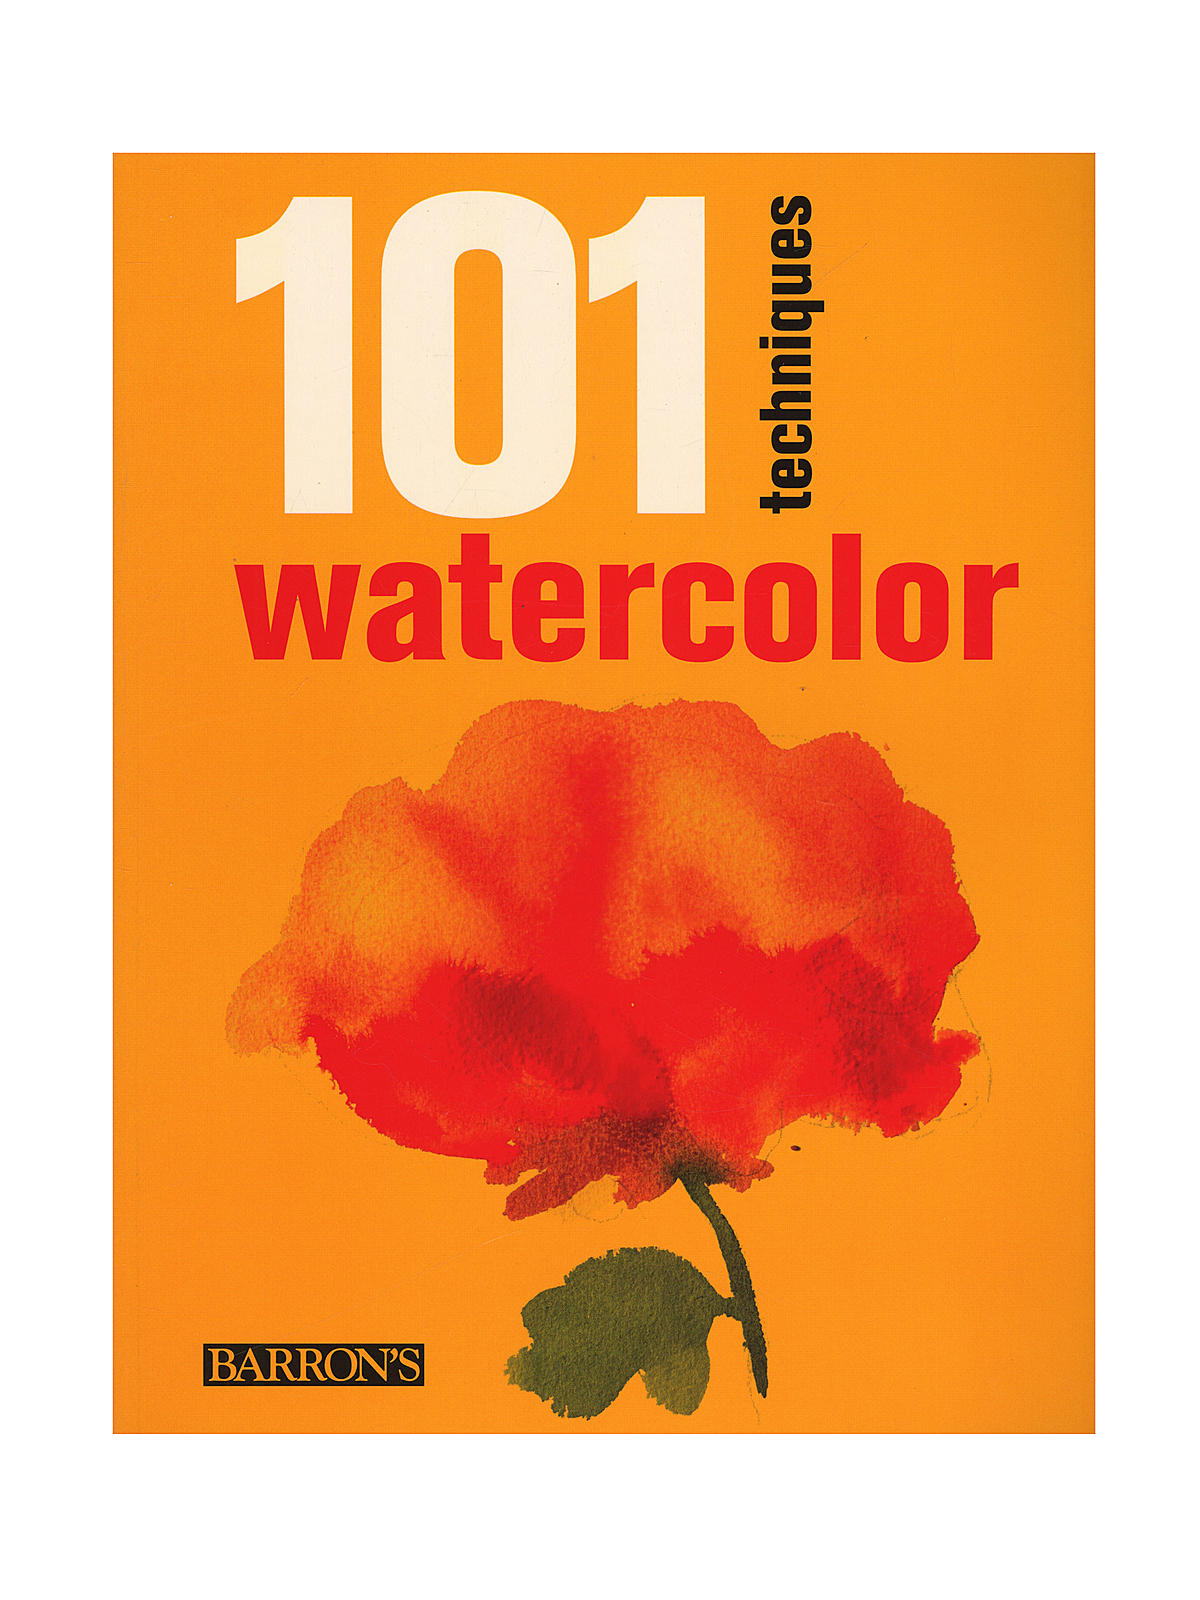 101 Techniques Watercolor